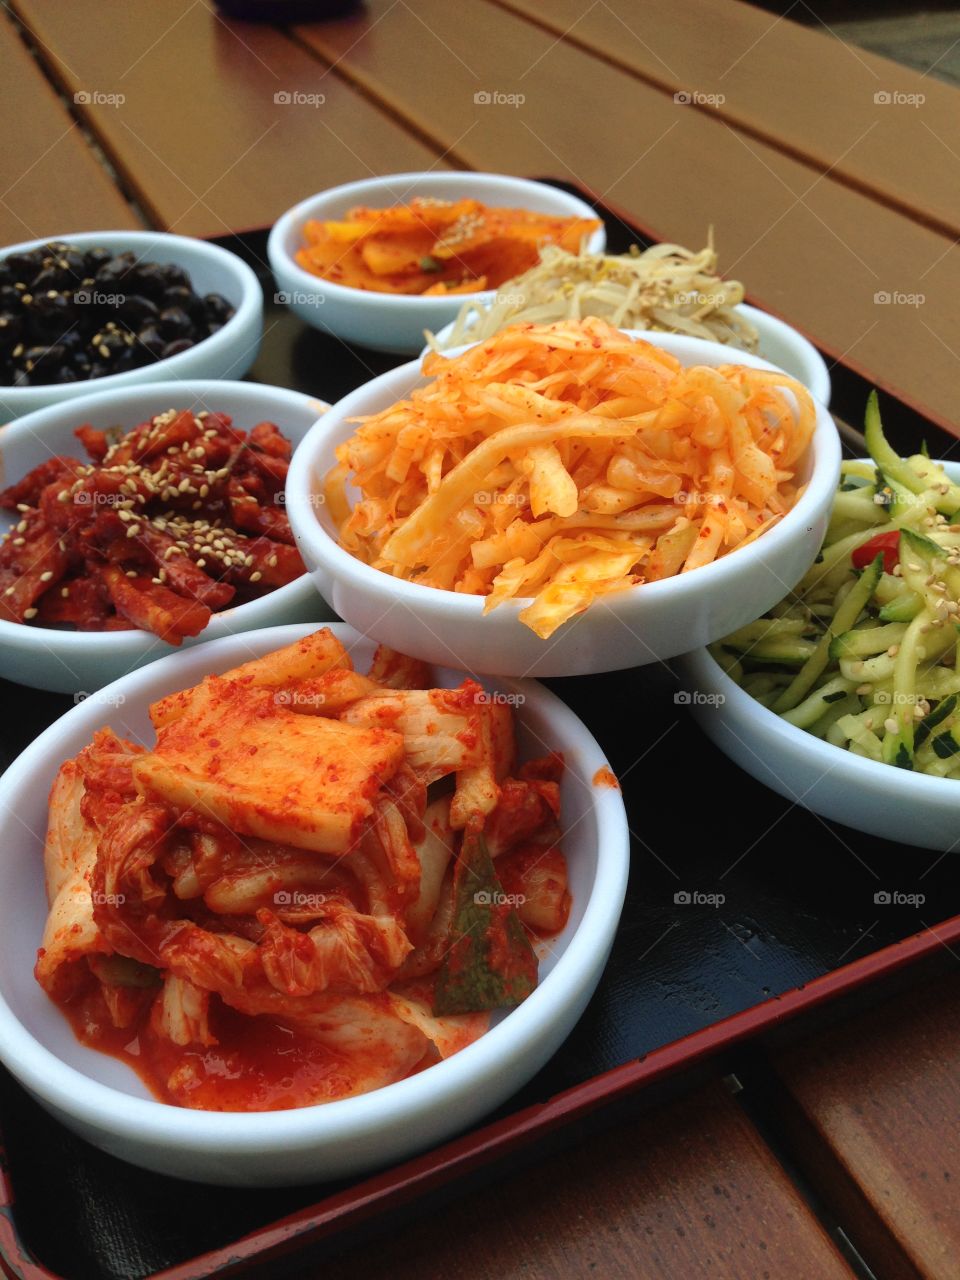 Kimchi & more